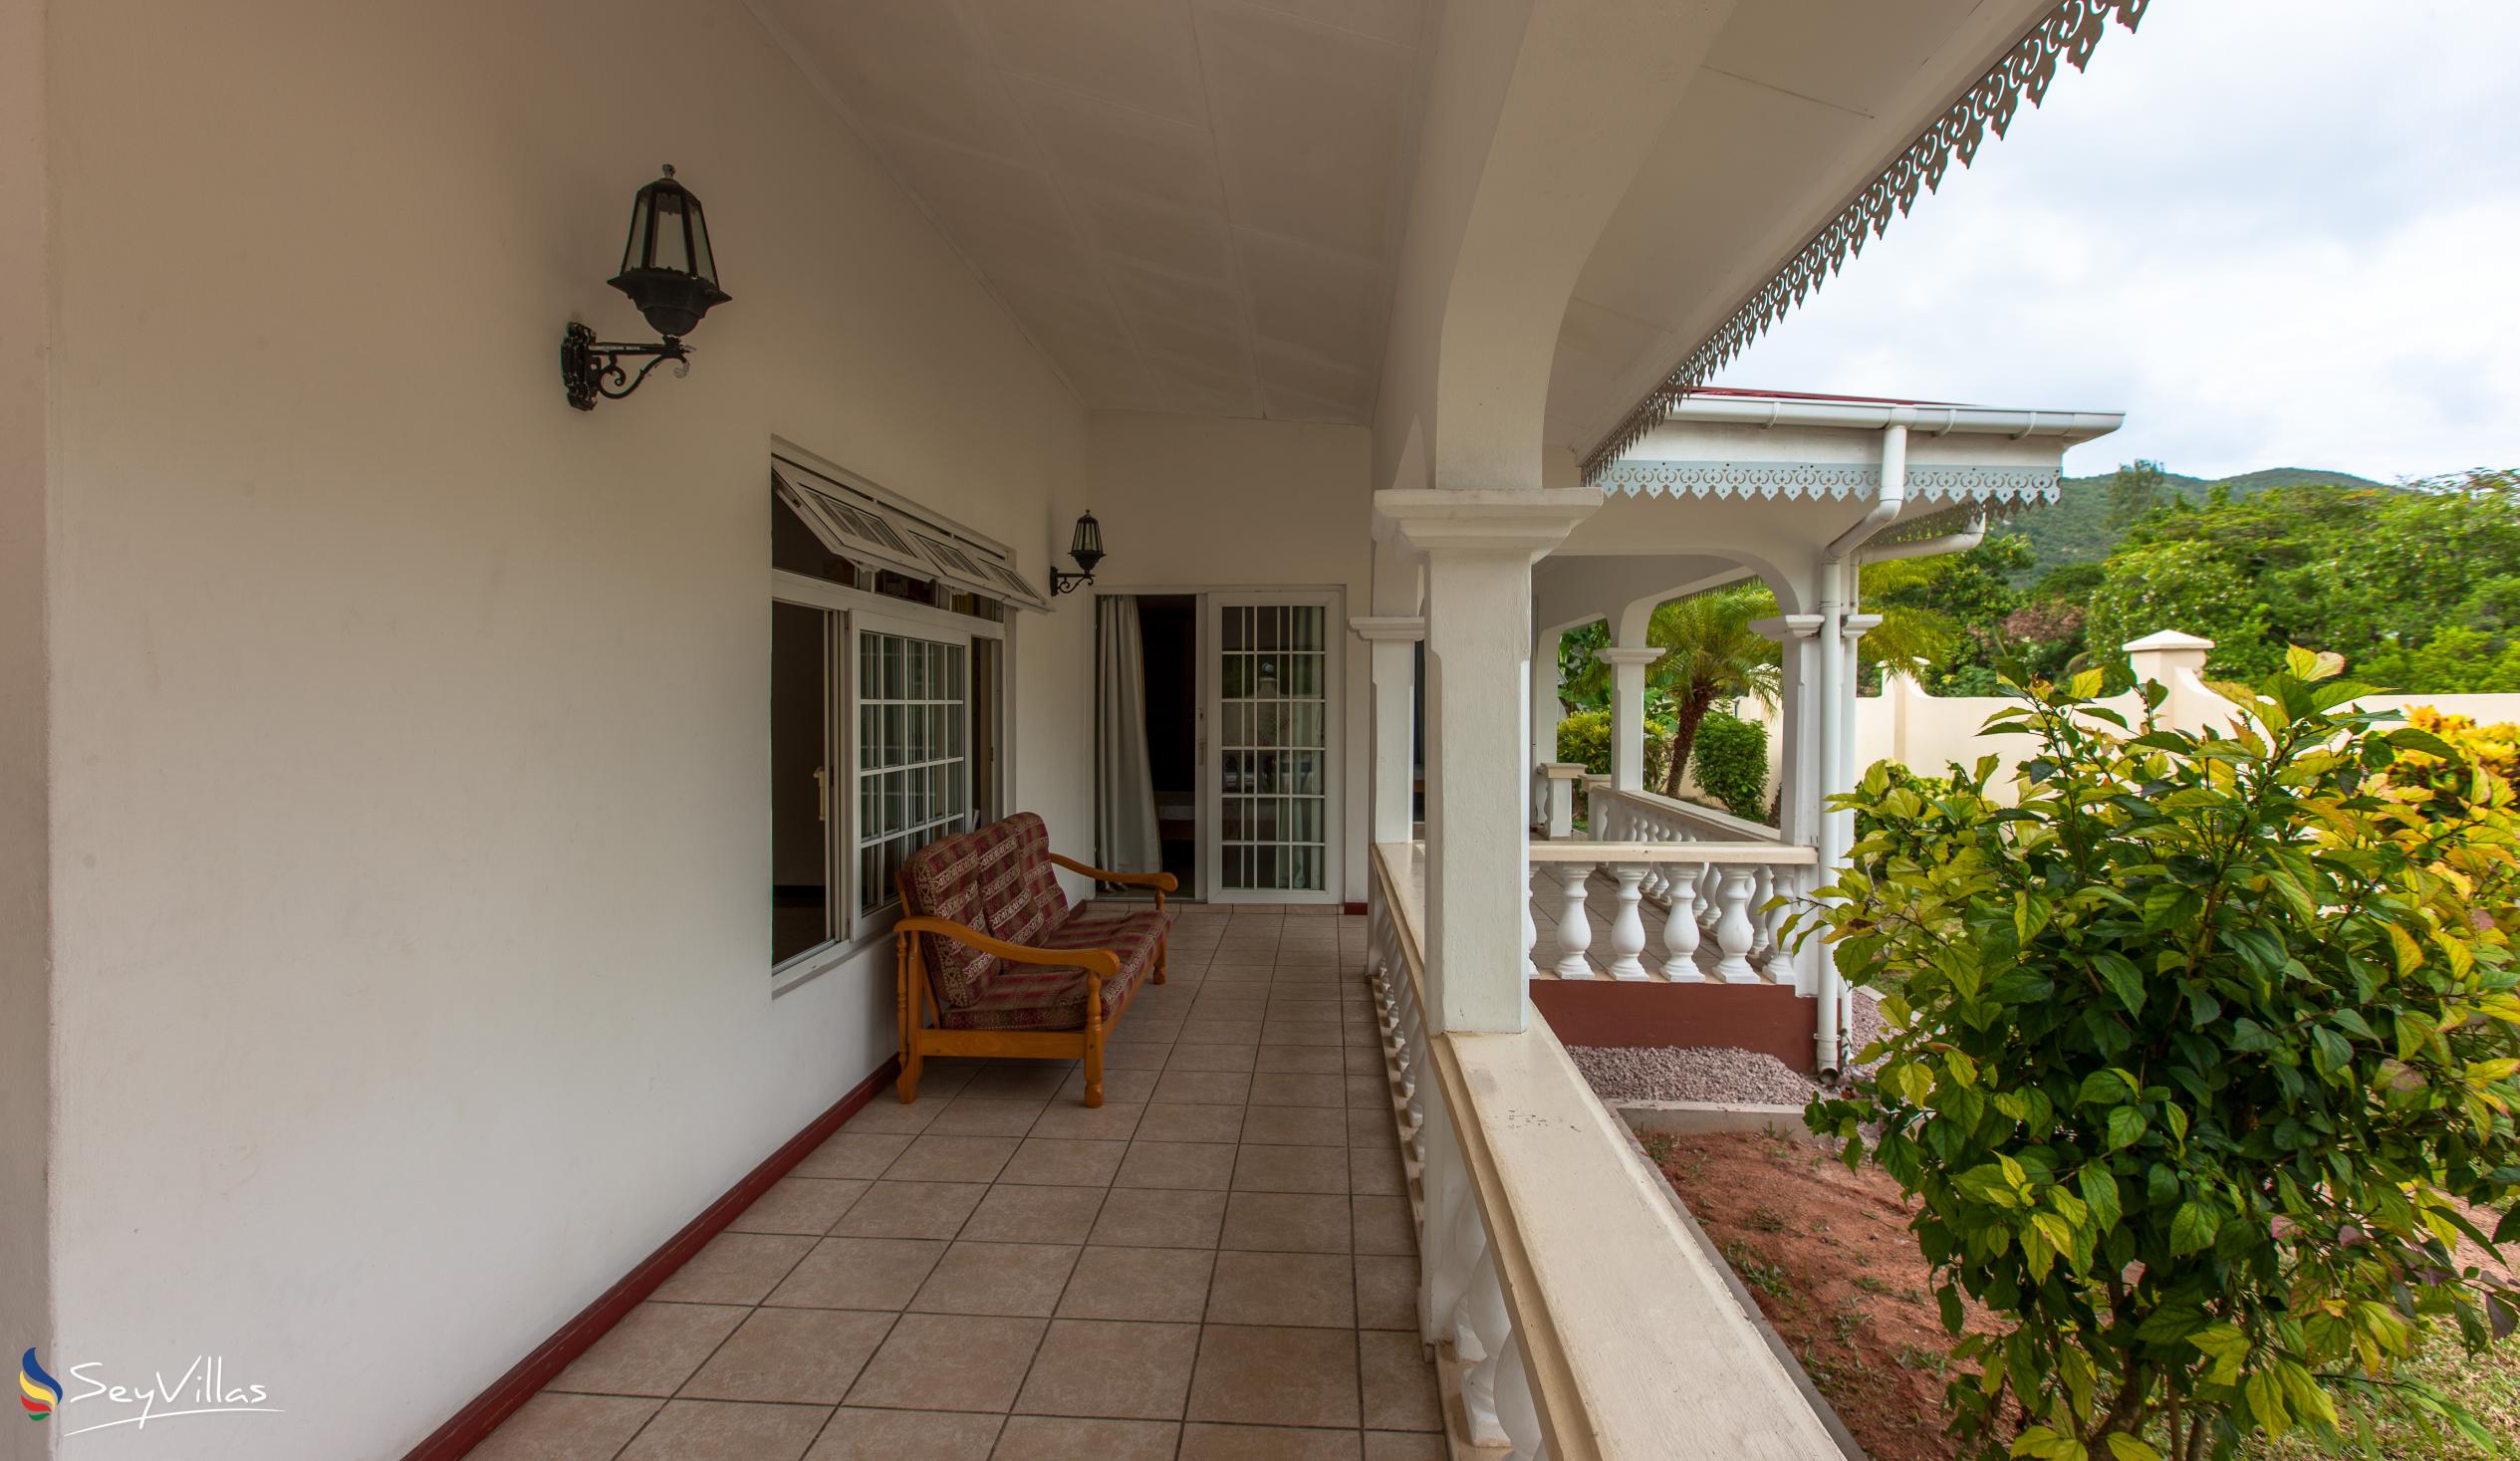 Foto 9: Villa Confort - Aussenbereich - Praslin (Seychellen)